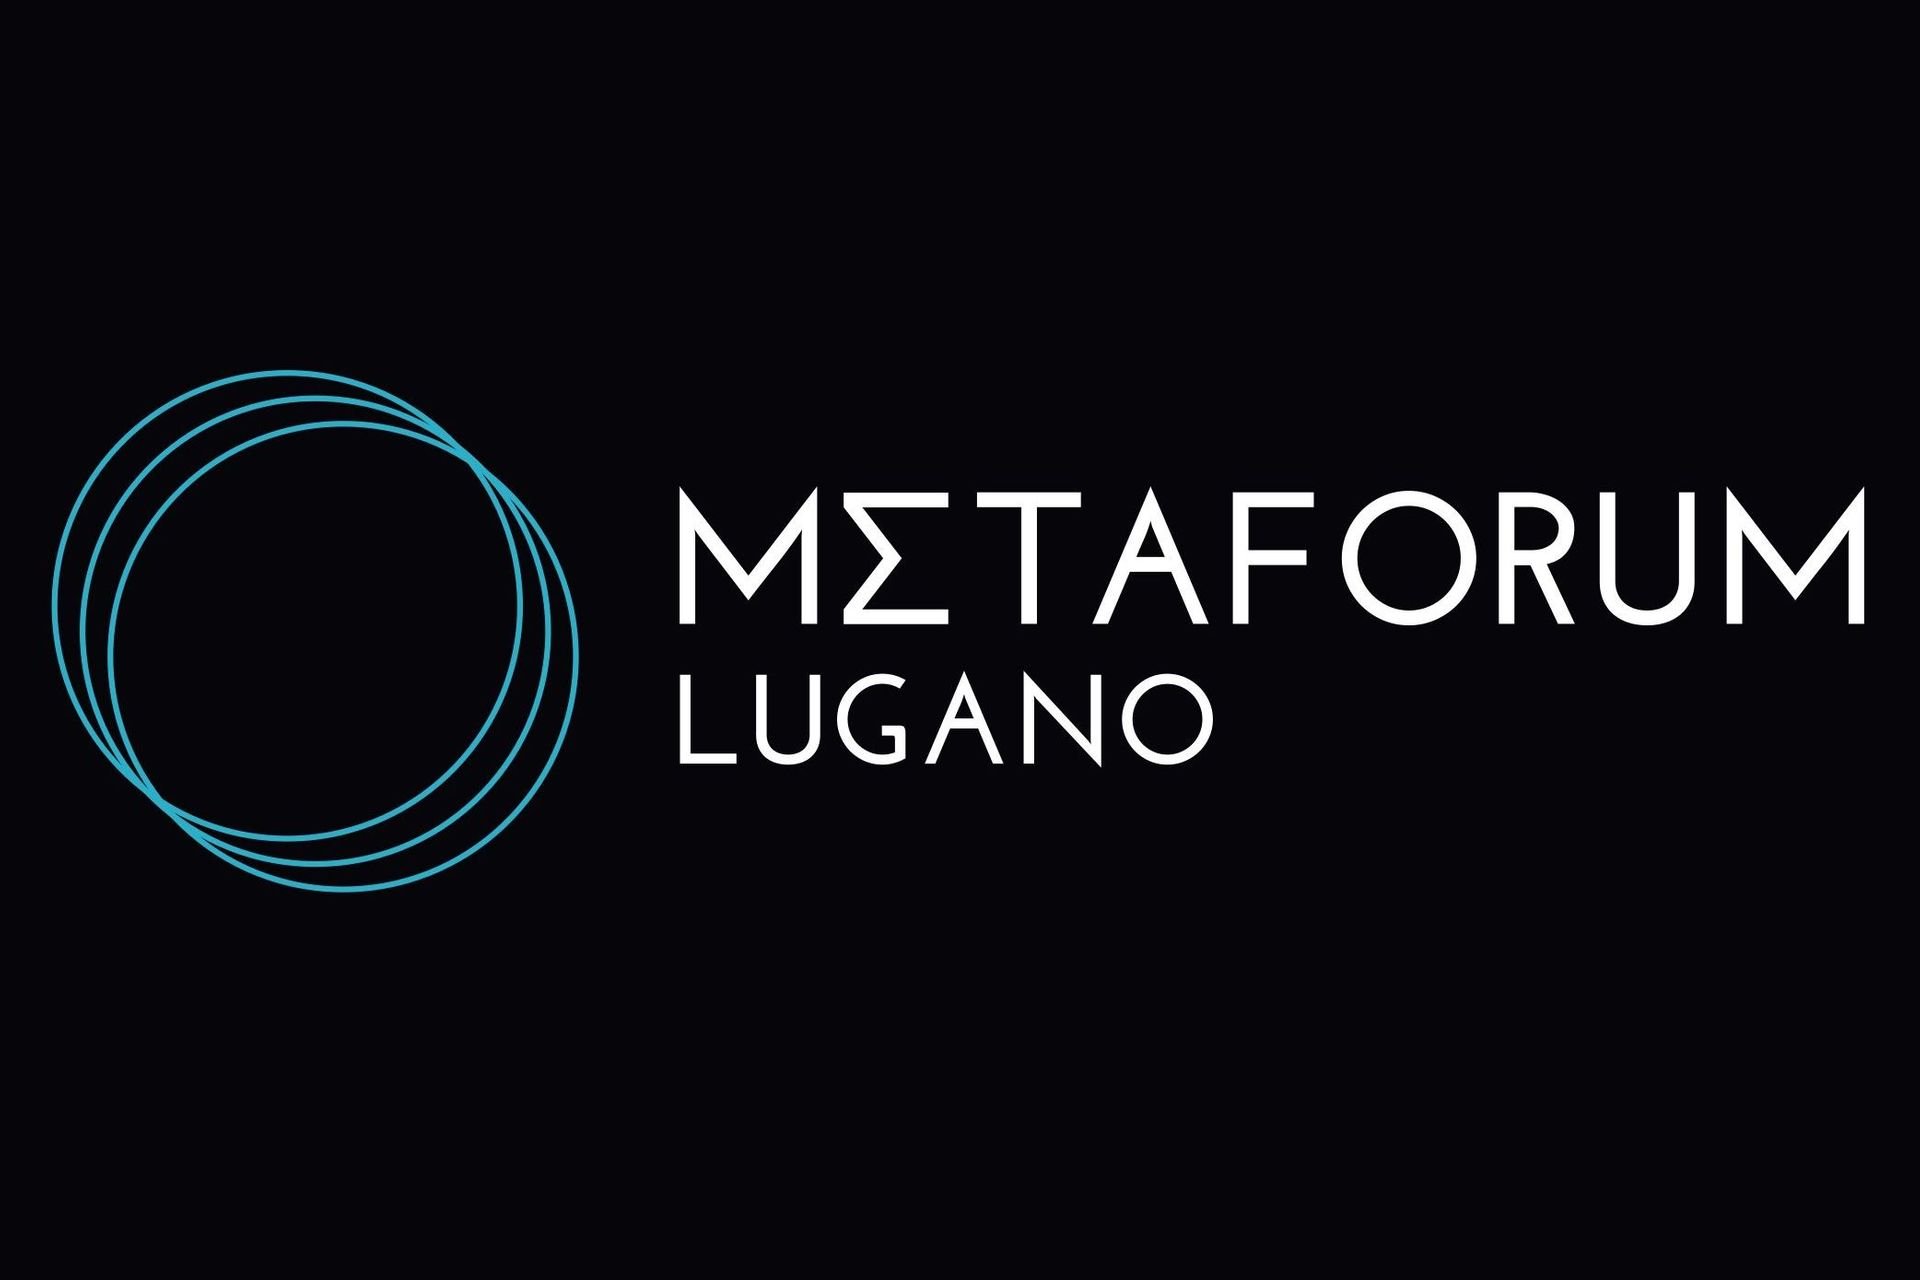 Metaforum Lugano 的标志